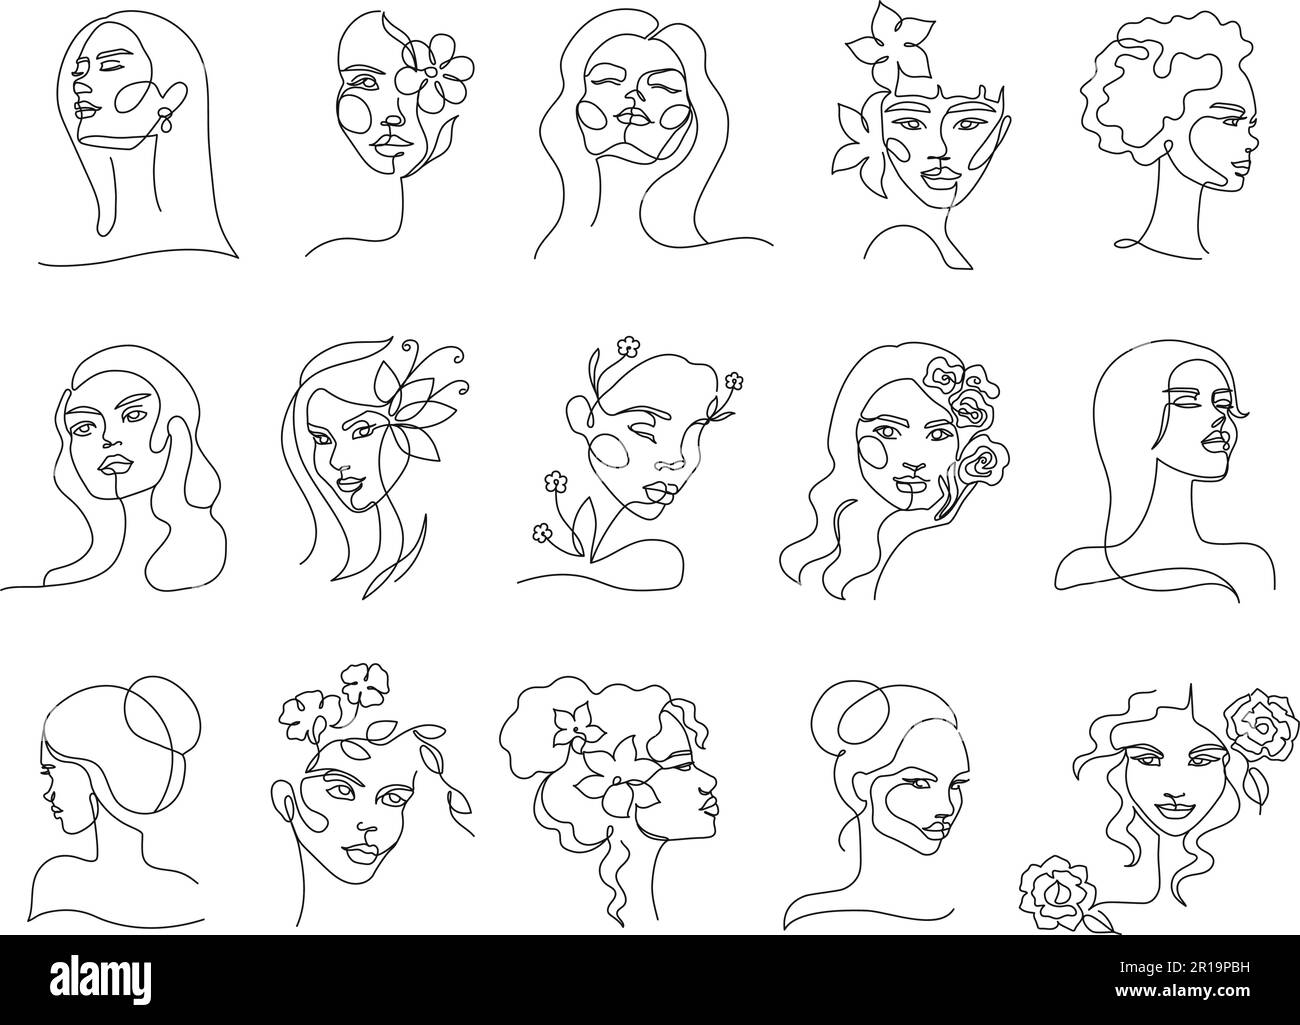 Una linea donna bellezza naturale. Ritratto femminile lineare, faccia ragazza minimale con fiori in capelli disegno a mano vettore set illustrazione Illustrazione Vettoriale